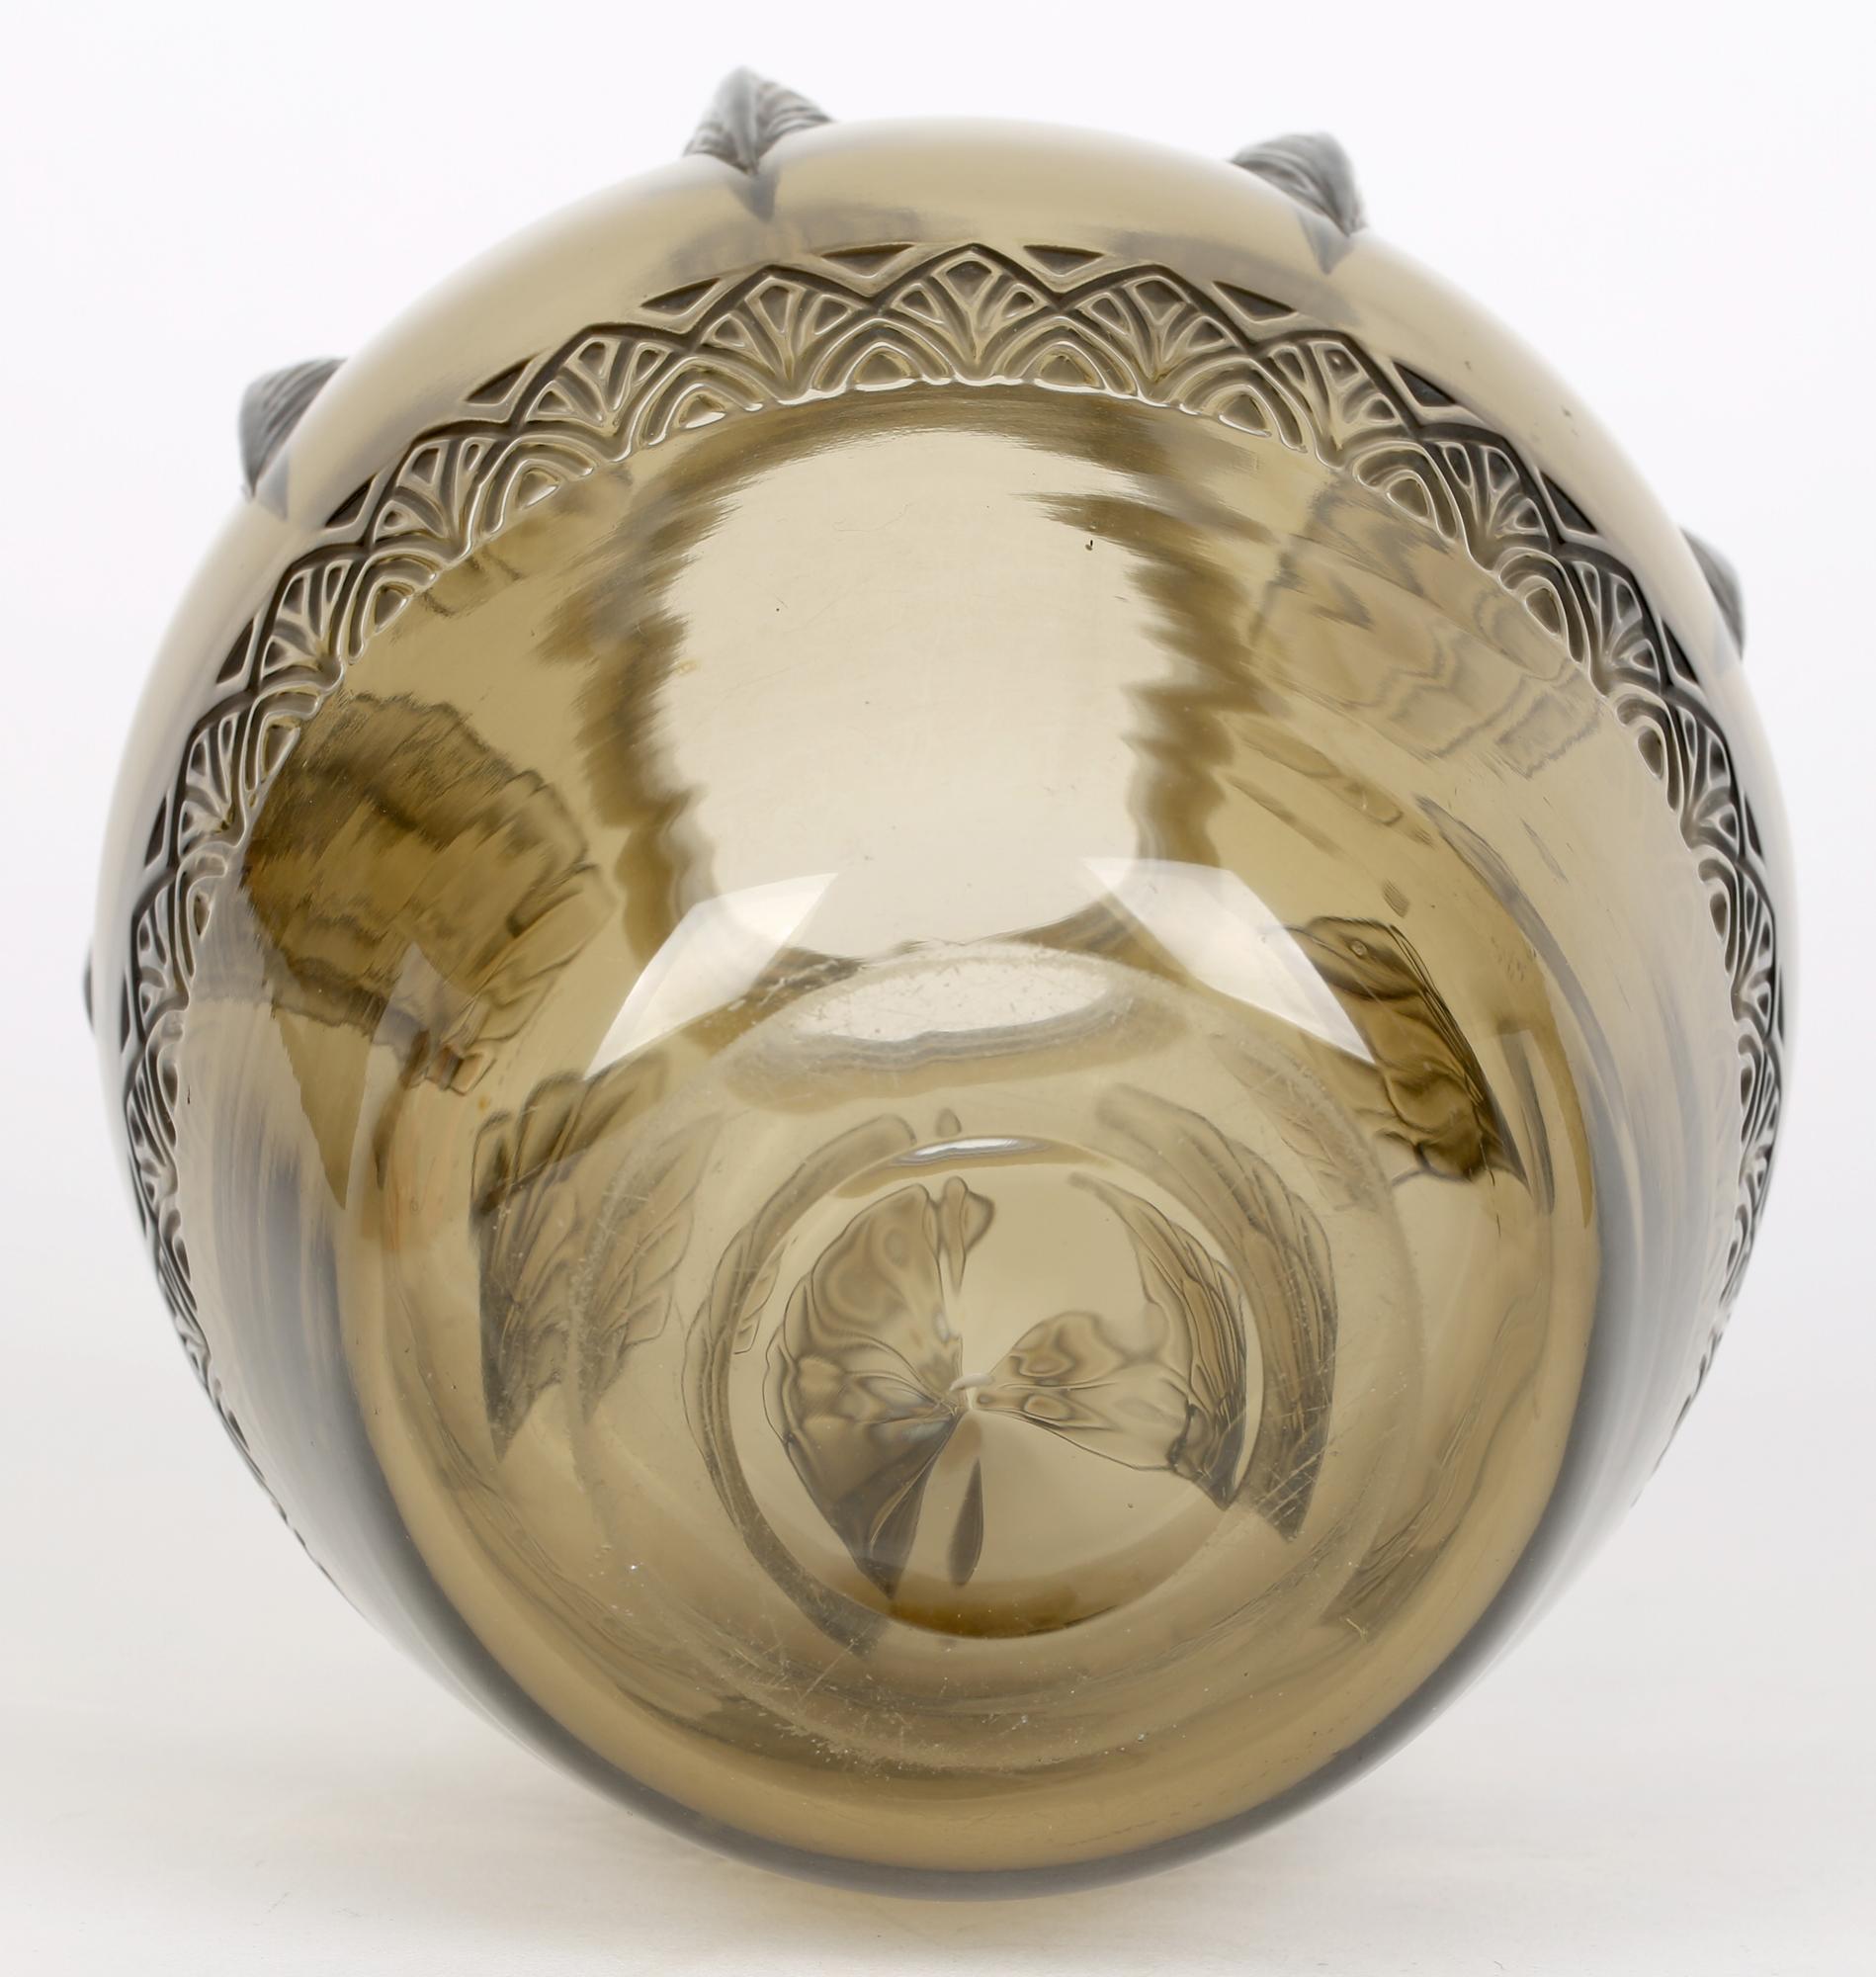 Un superbe vase en verre d'art Art déco français de qualité supérieure, teinté brun, moulé avec un motif d'ailes d'oiseau, réalisé par les célèbres verriers Verlys et datant des années 1930. De forme bulbeuse arrondie, le vase repose sur un étroit